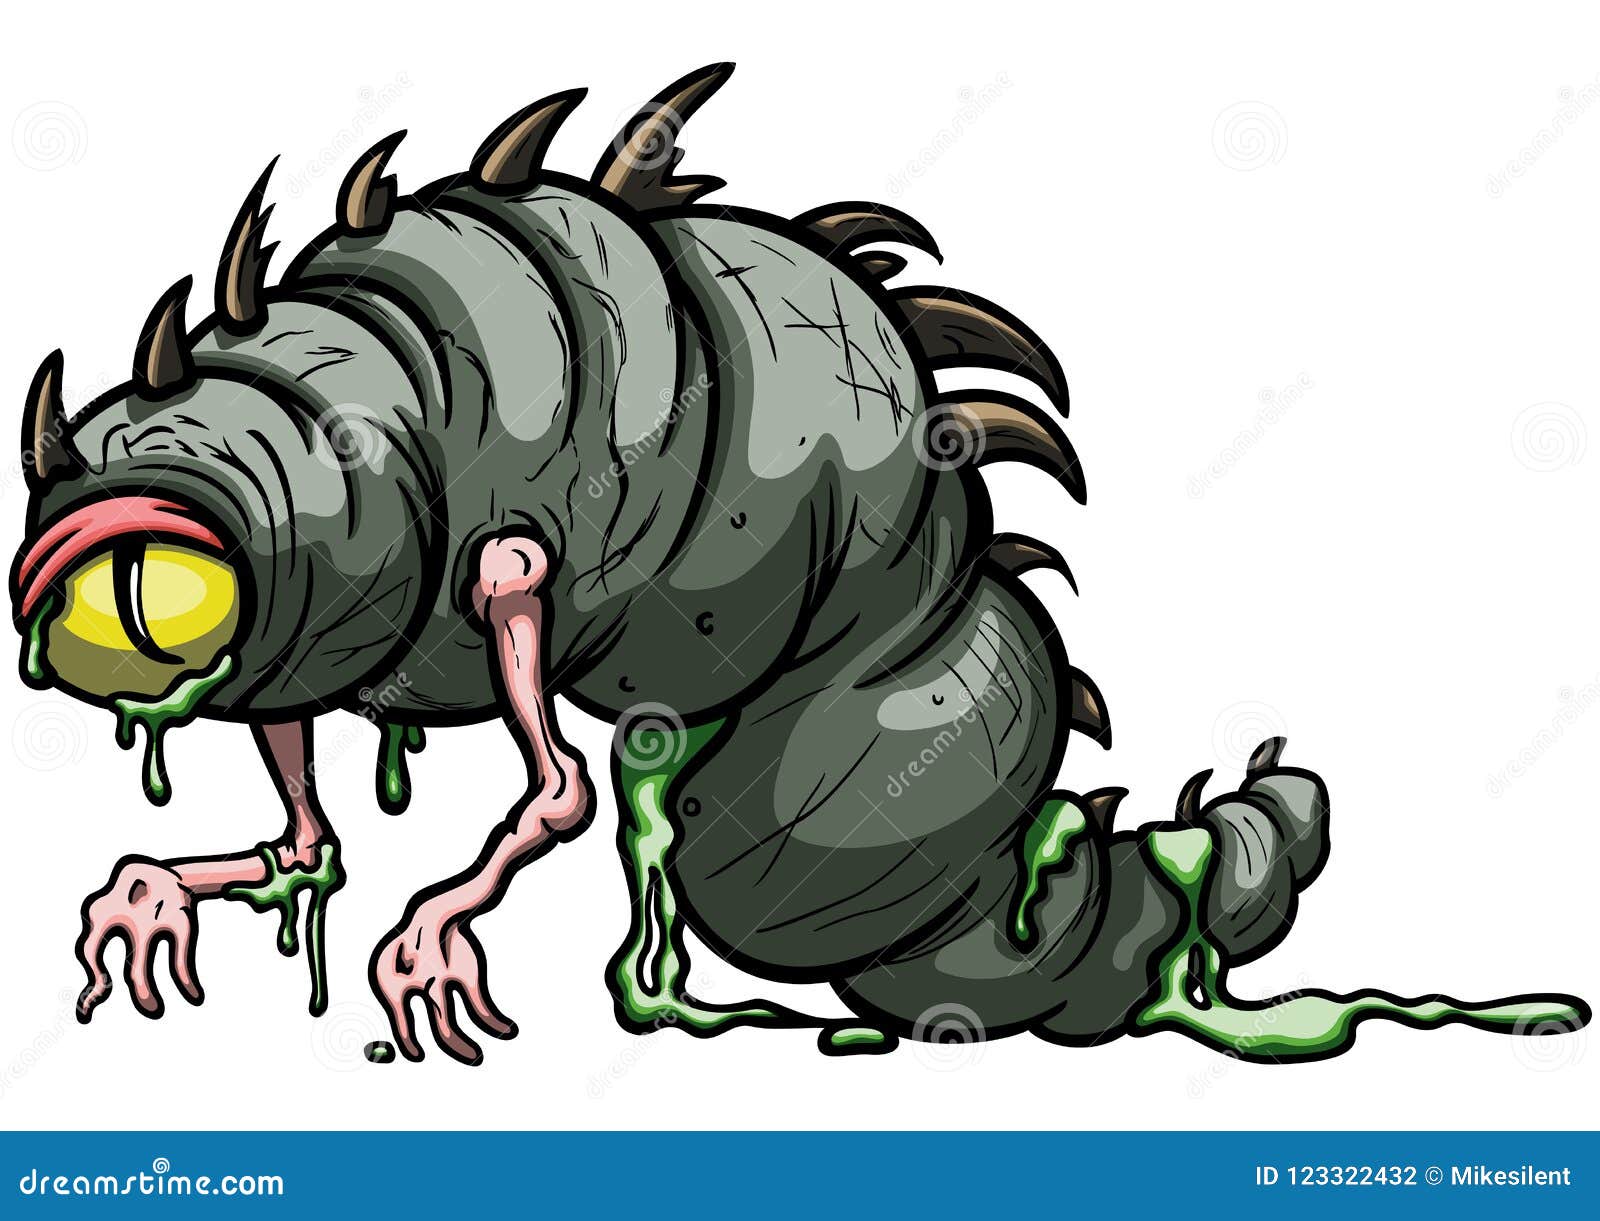 Funny larva monster stock vector. Illustration of amorphous - 123322432